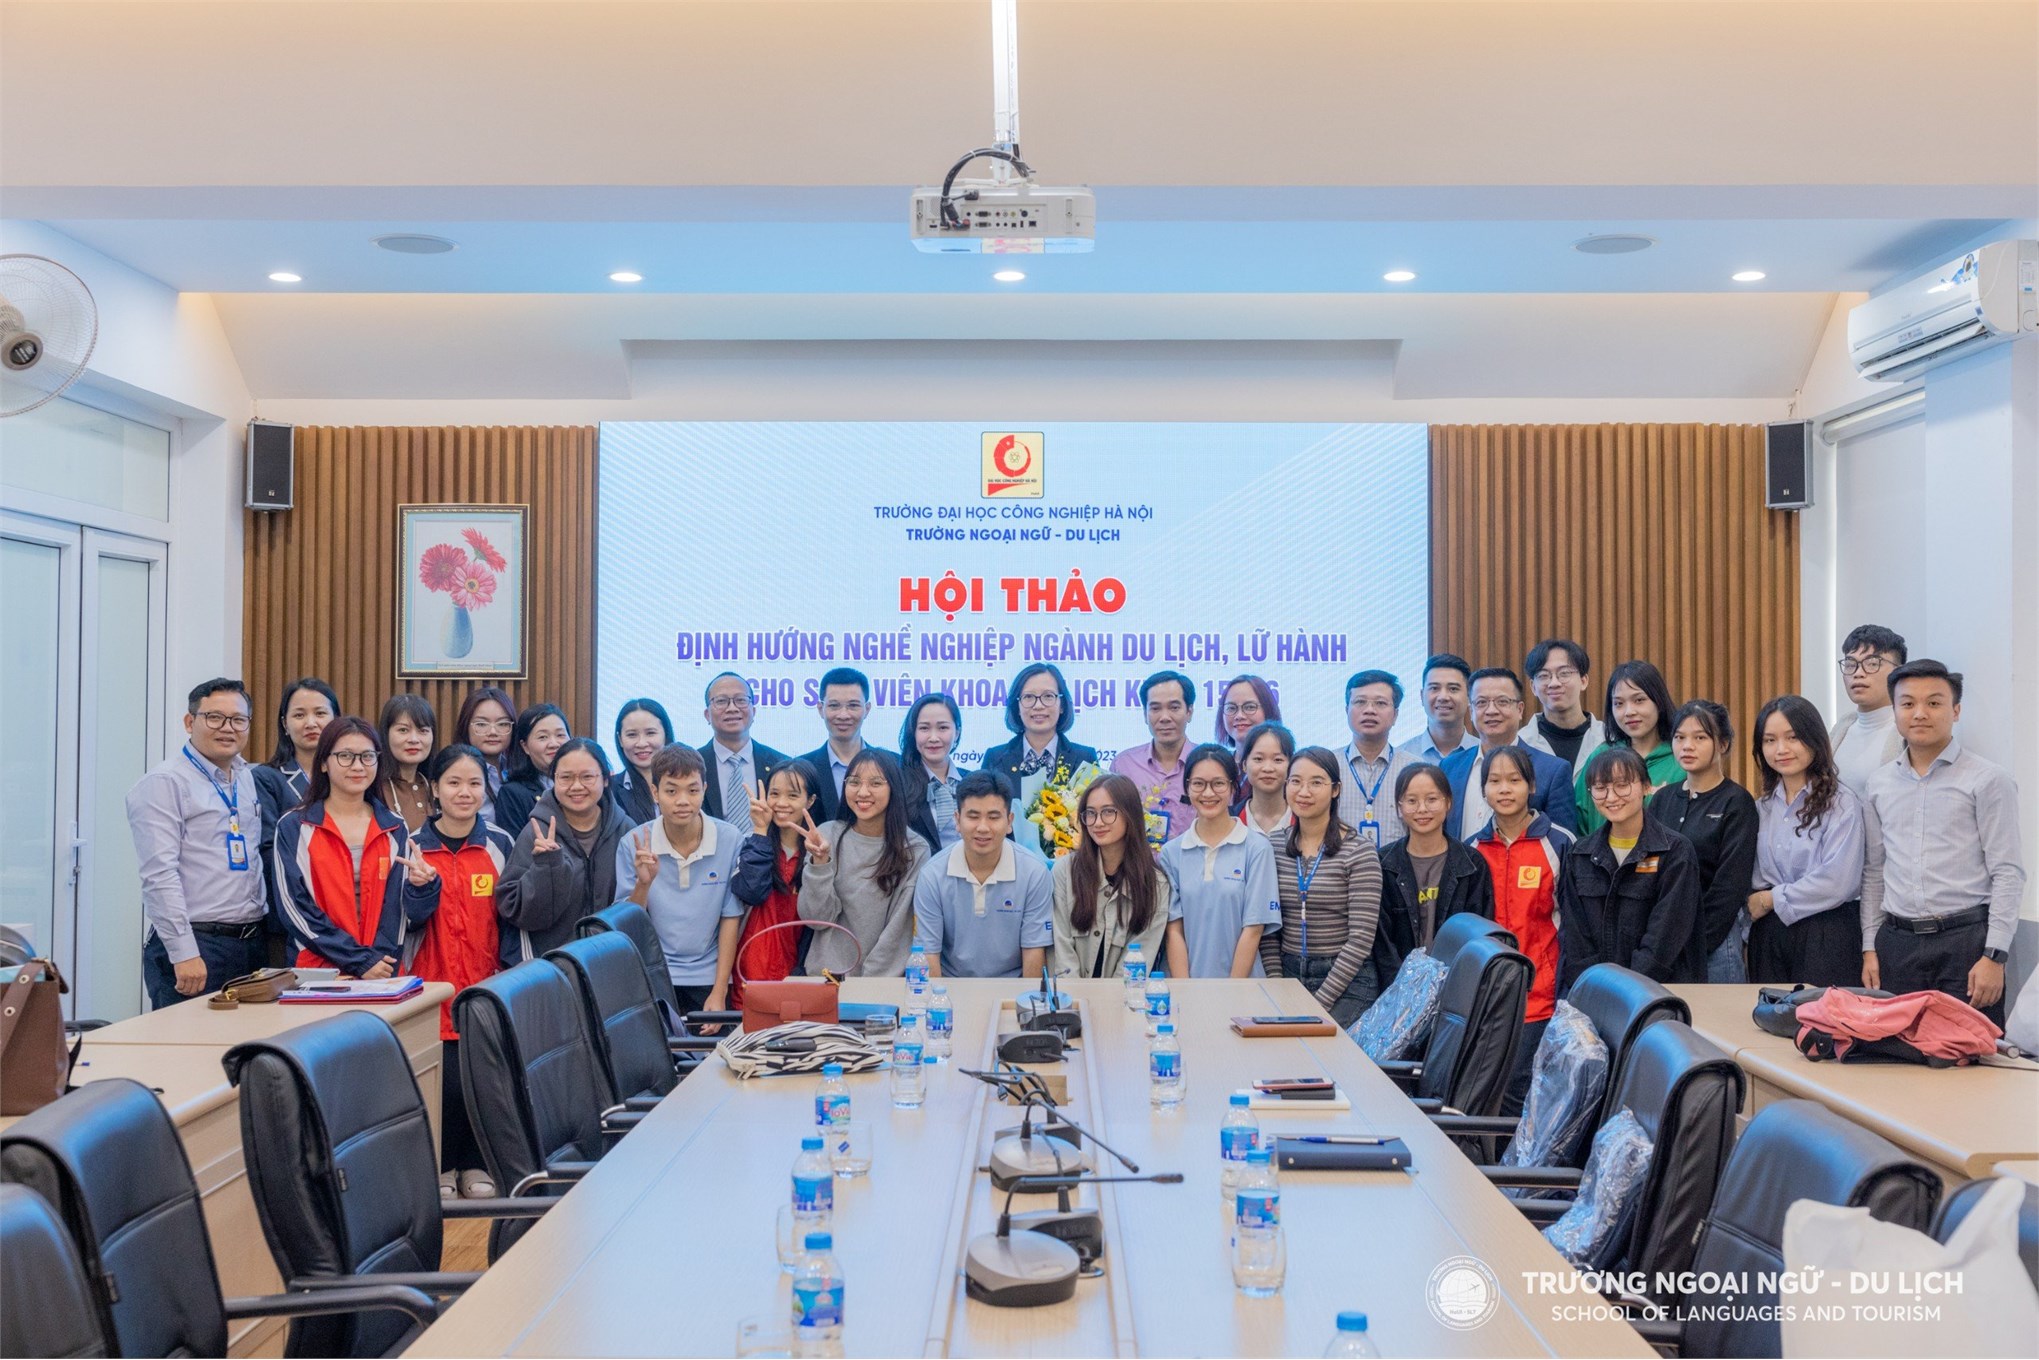 Thúc đẩy mối quan hệ hợp tác sâu rộng trong lĩnh vực du lịch, lữ hành giữa Trường Ngoại ngữ - Du lịch và SaigonTourist